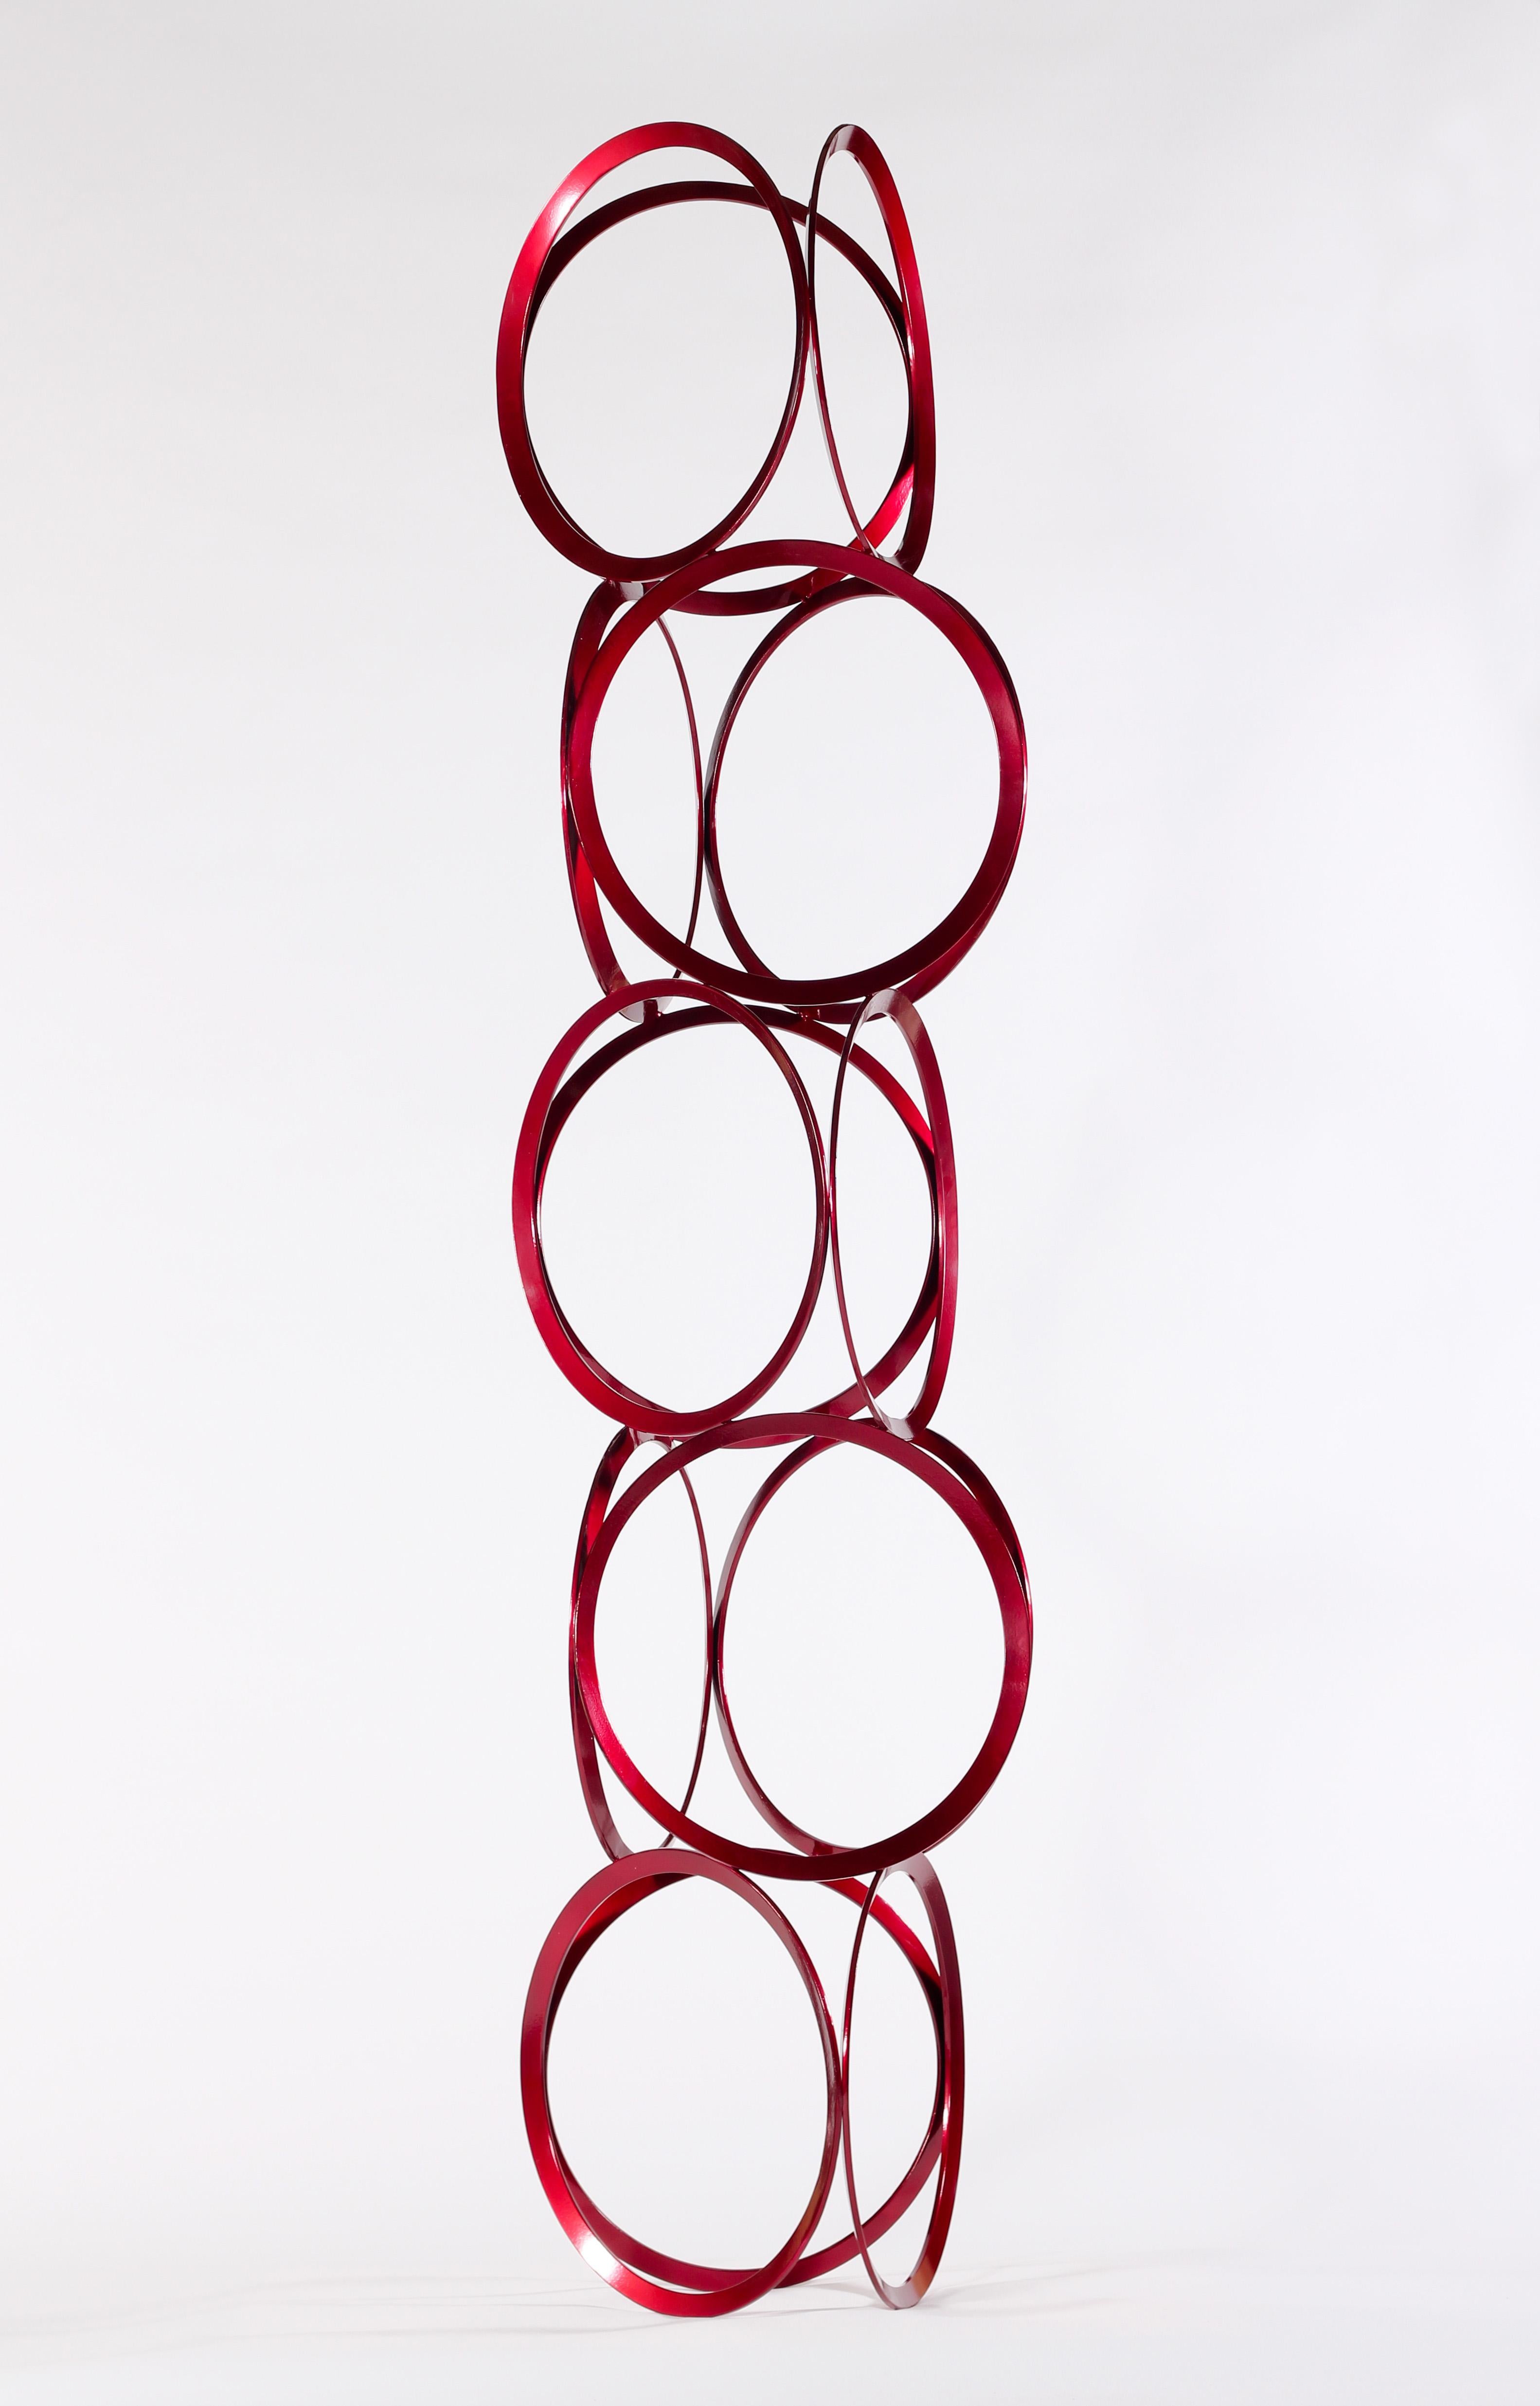 Grand dessin dans l'espace - Sculpture en acier revêtu d'un rouge vif, géométrique et abstraite